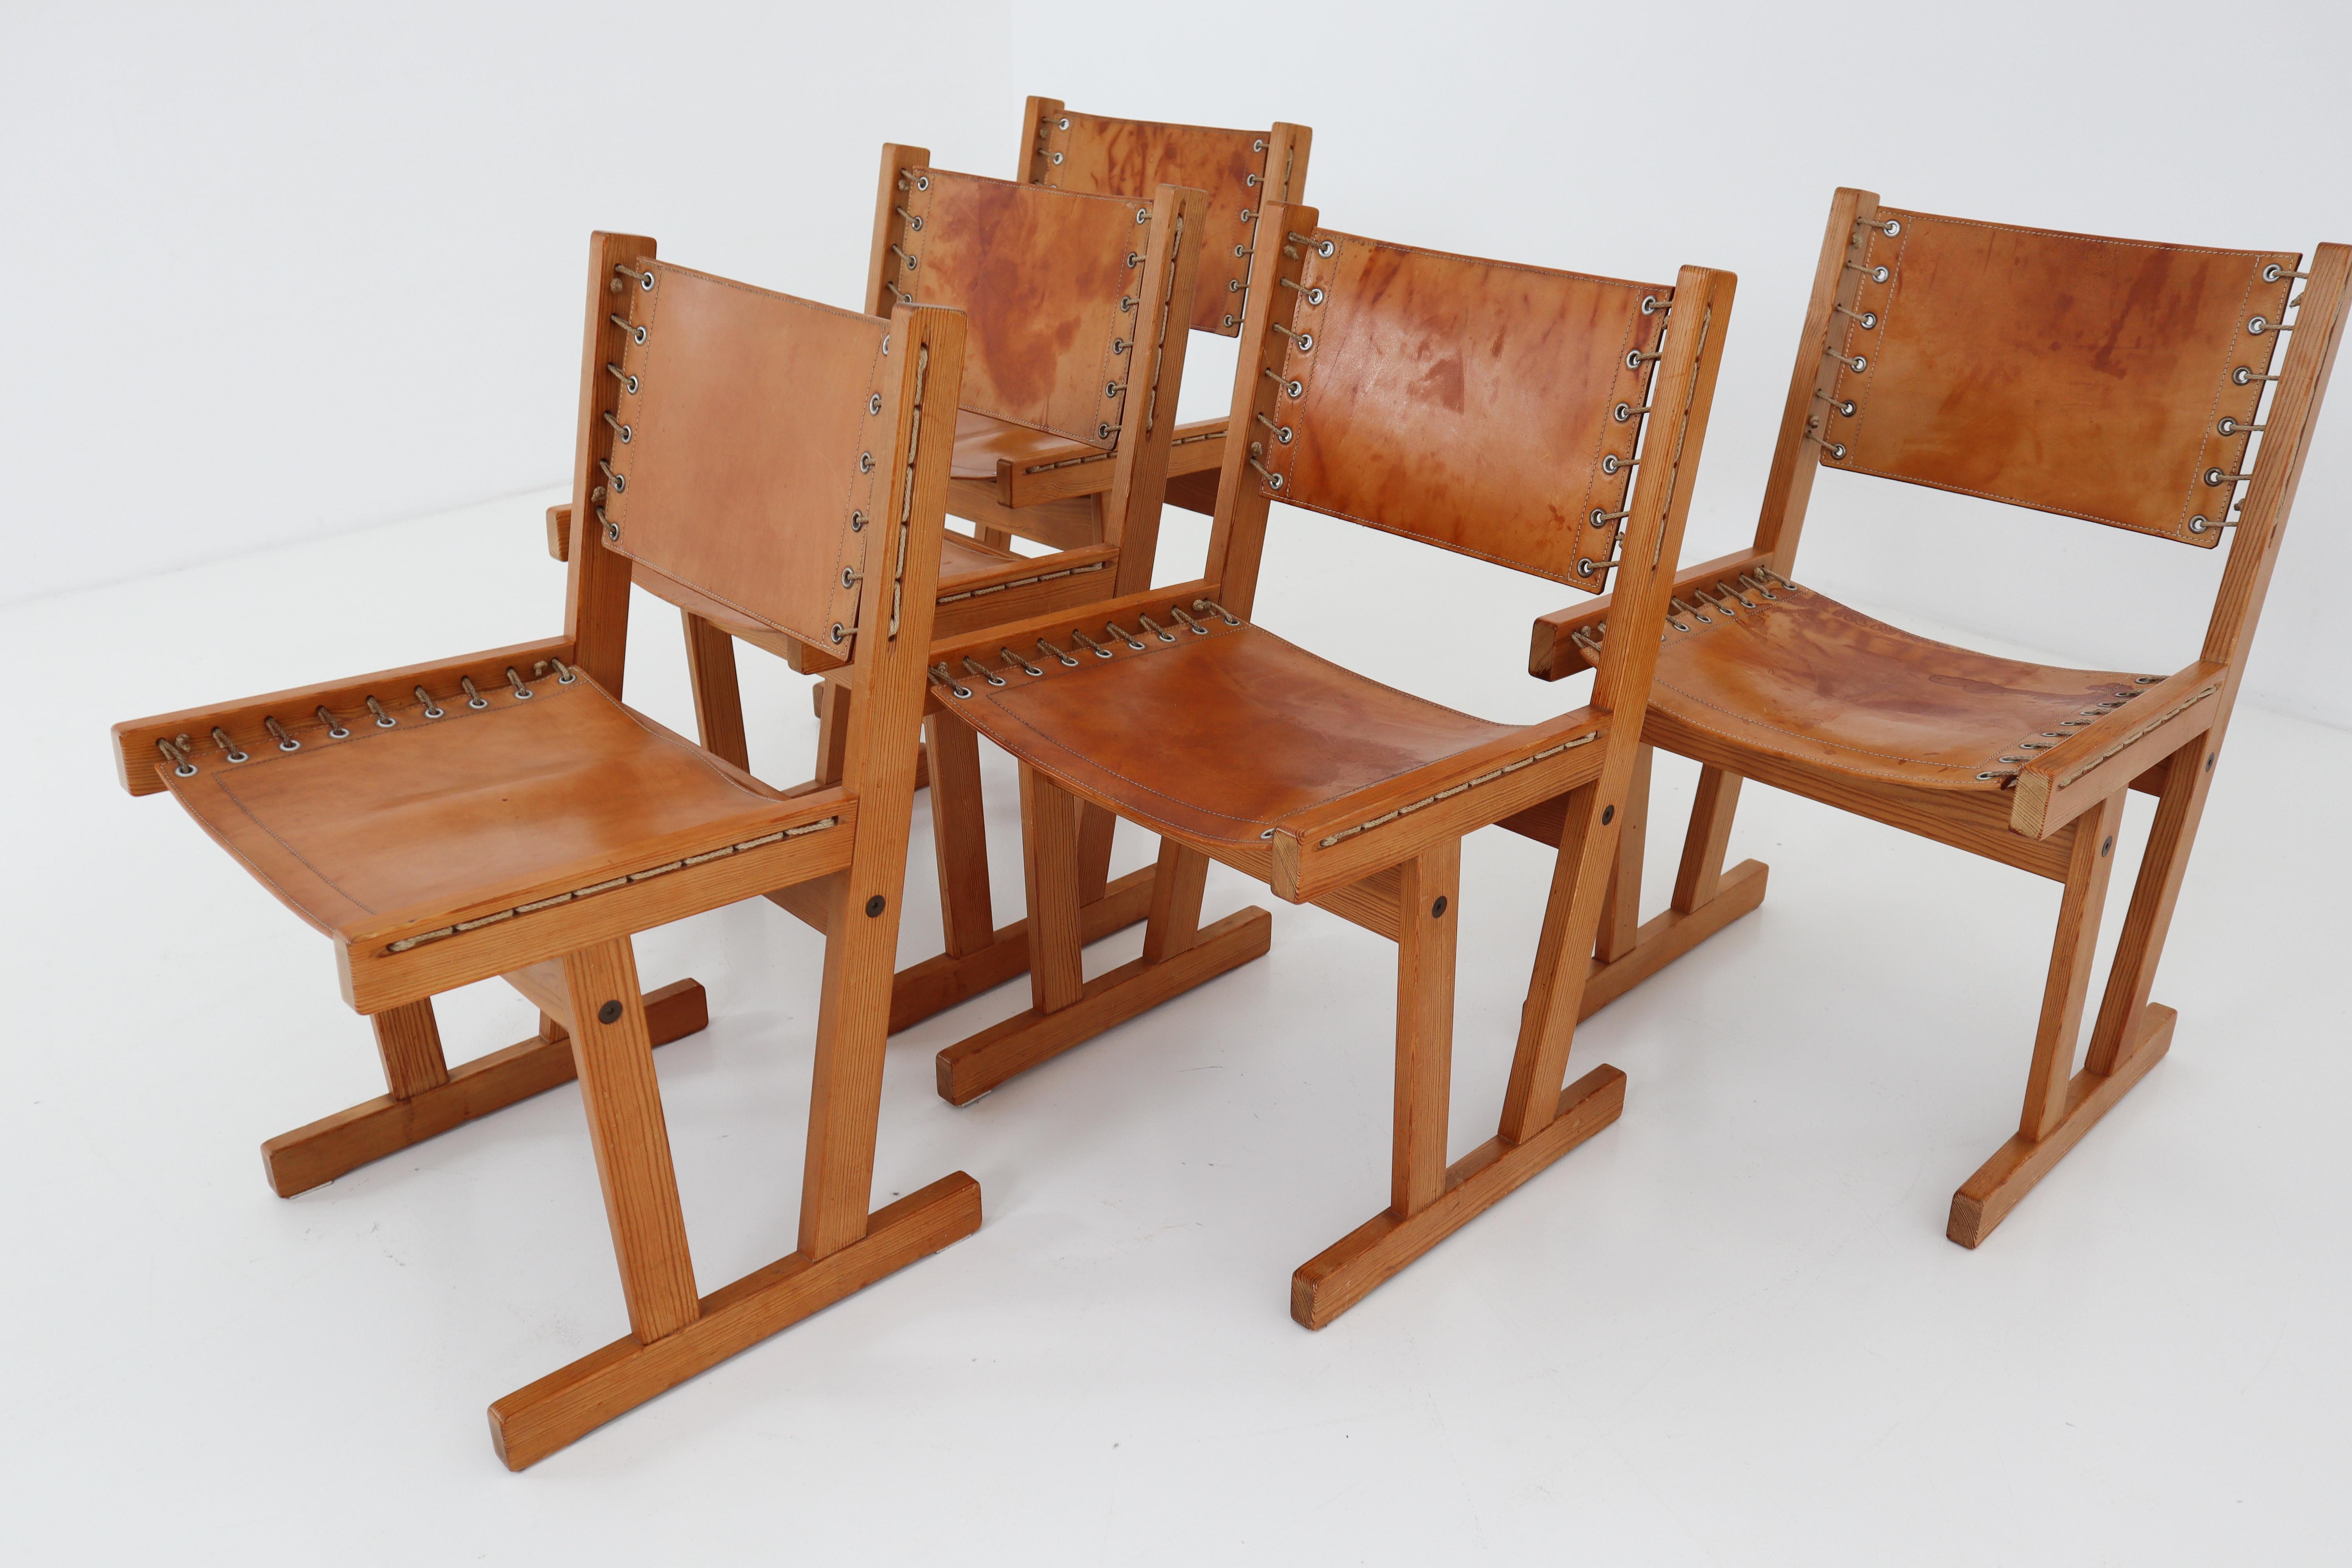 pine wood chairs